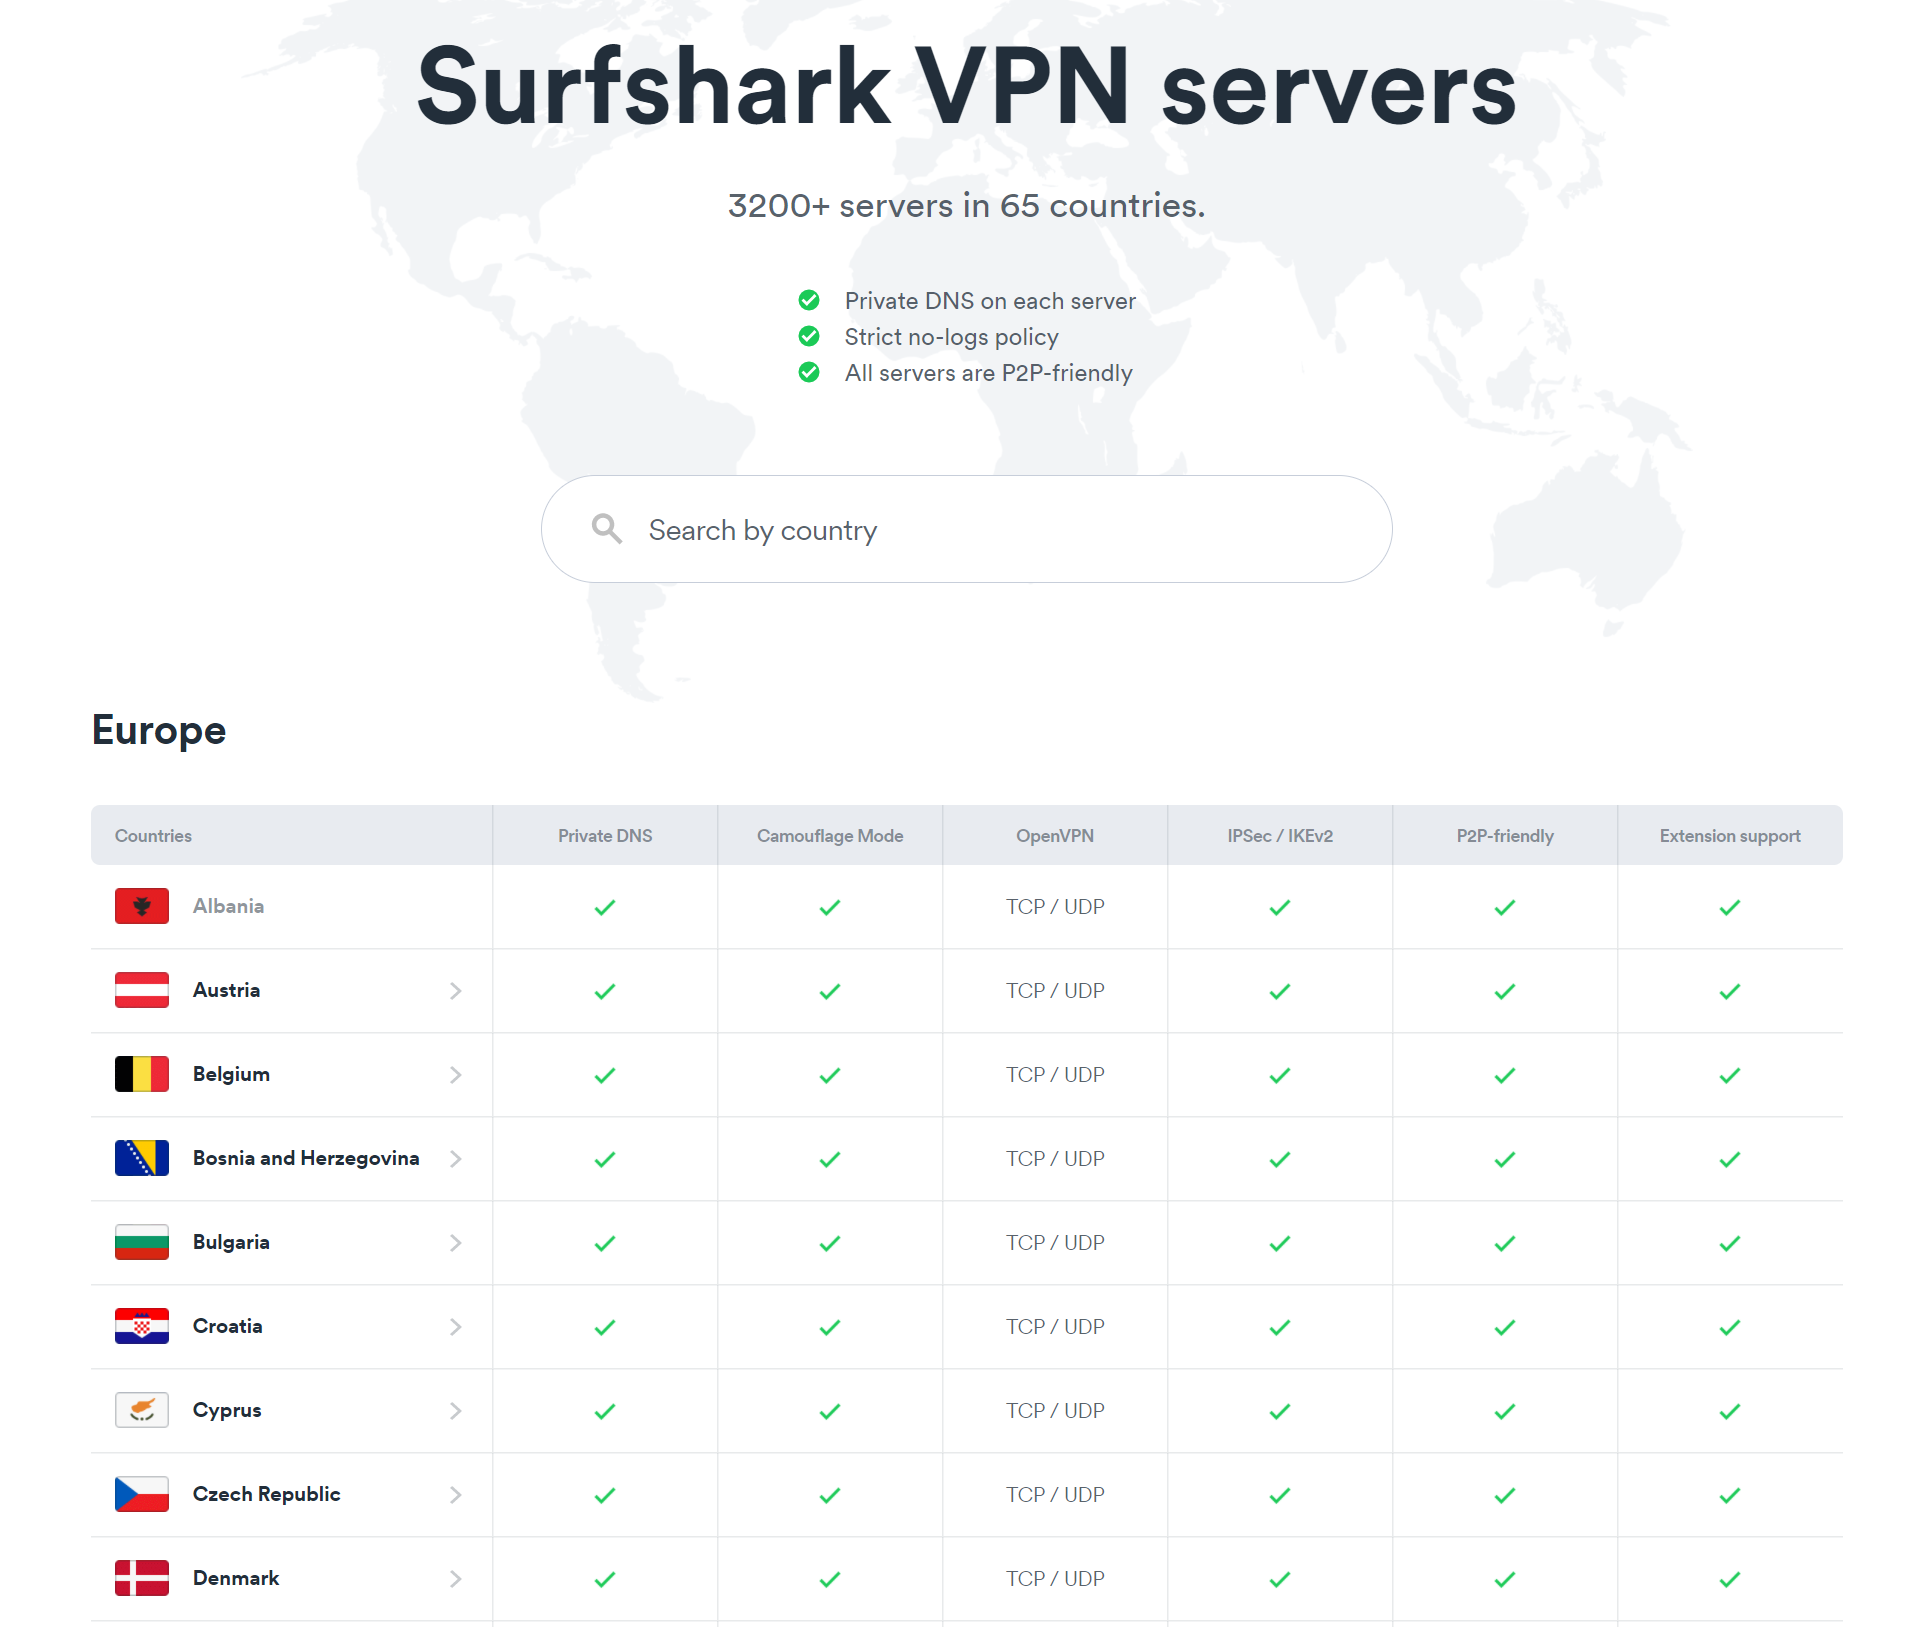 surfshark server locations